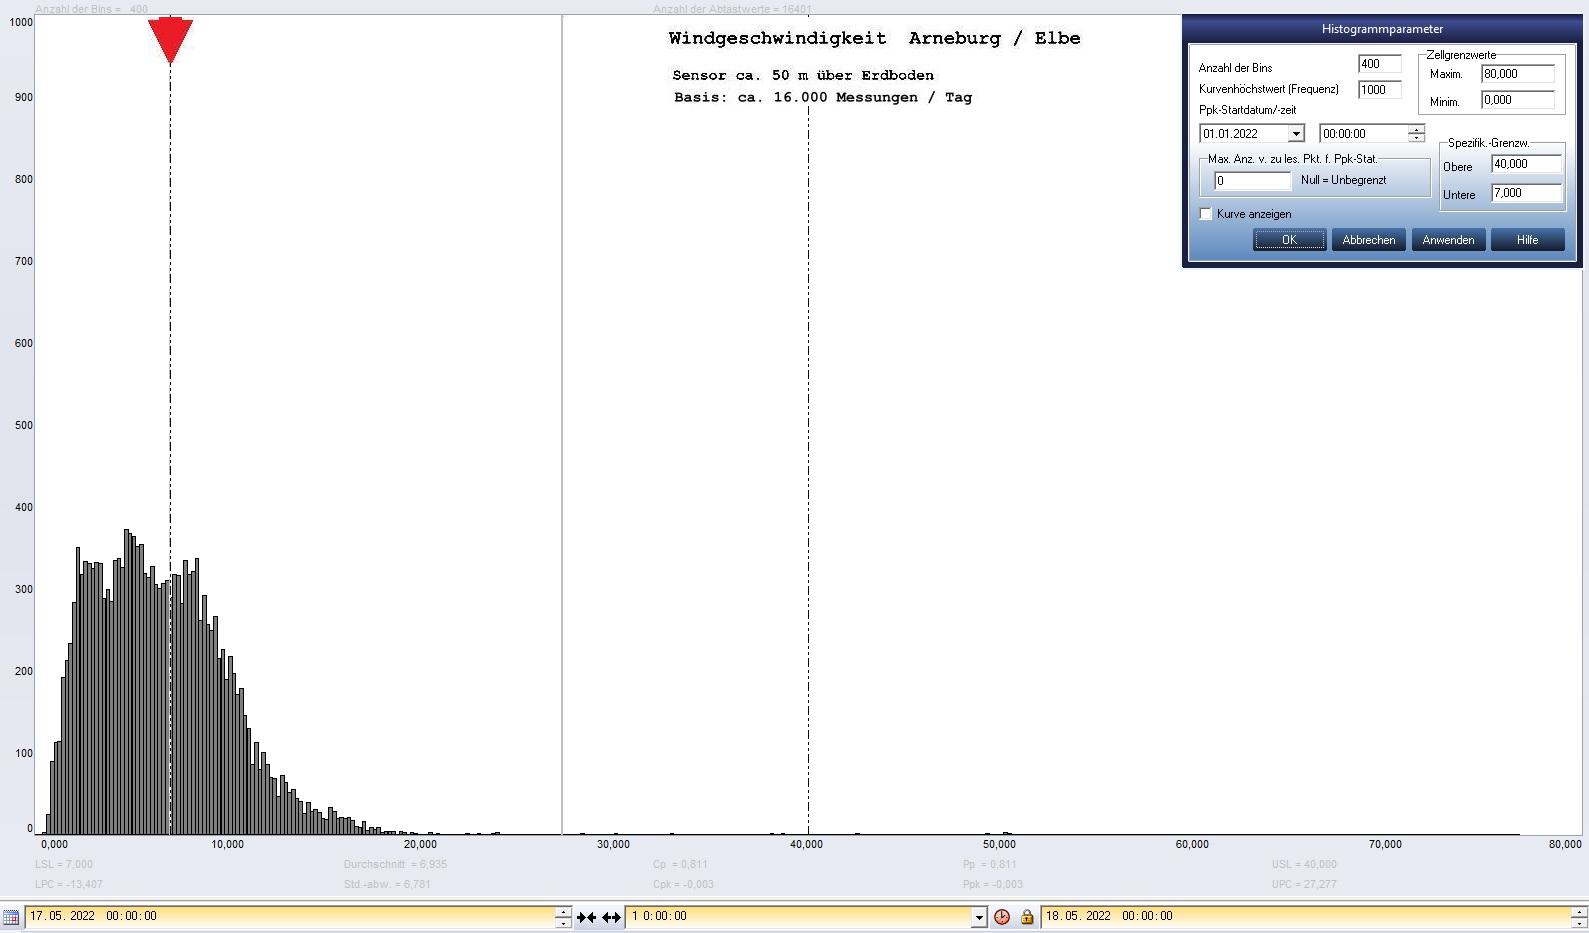 Arneburg Tages-Histogramm Winddaten, 17.05.2022
  Histogramm, Sensor auf Gebude, ca. 50 m ber Erdboden, Basis: 5s-Aufzeichnung